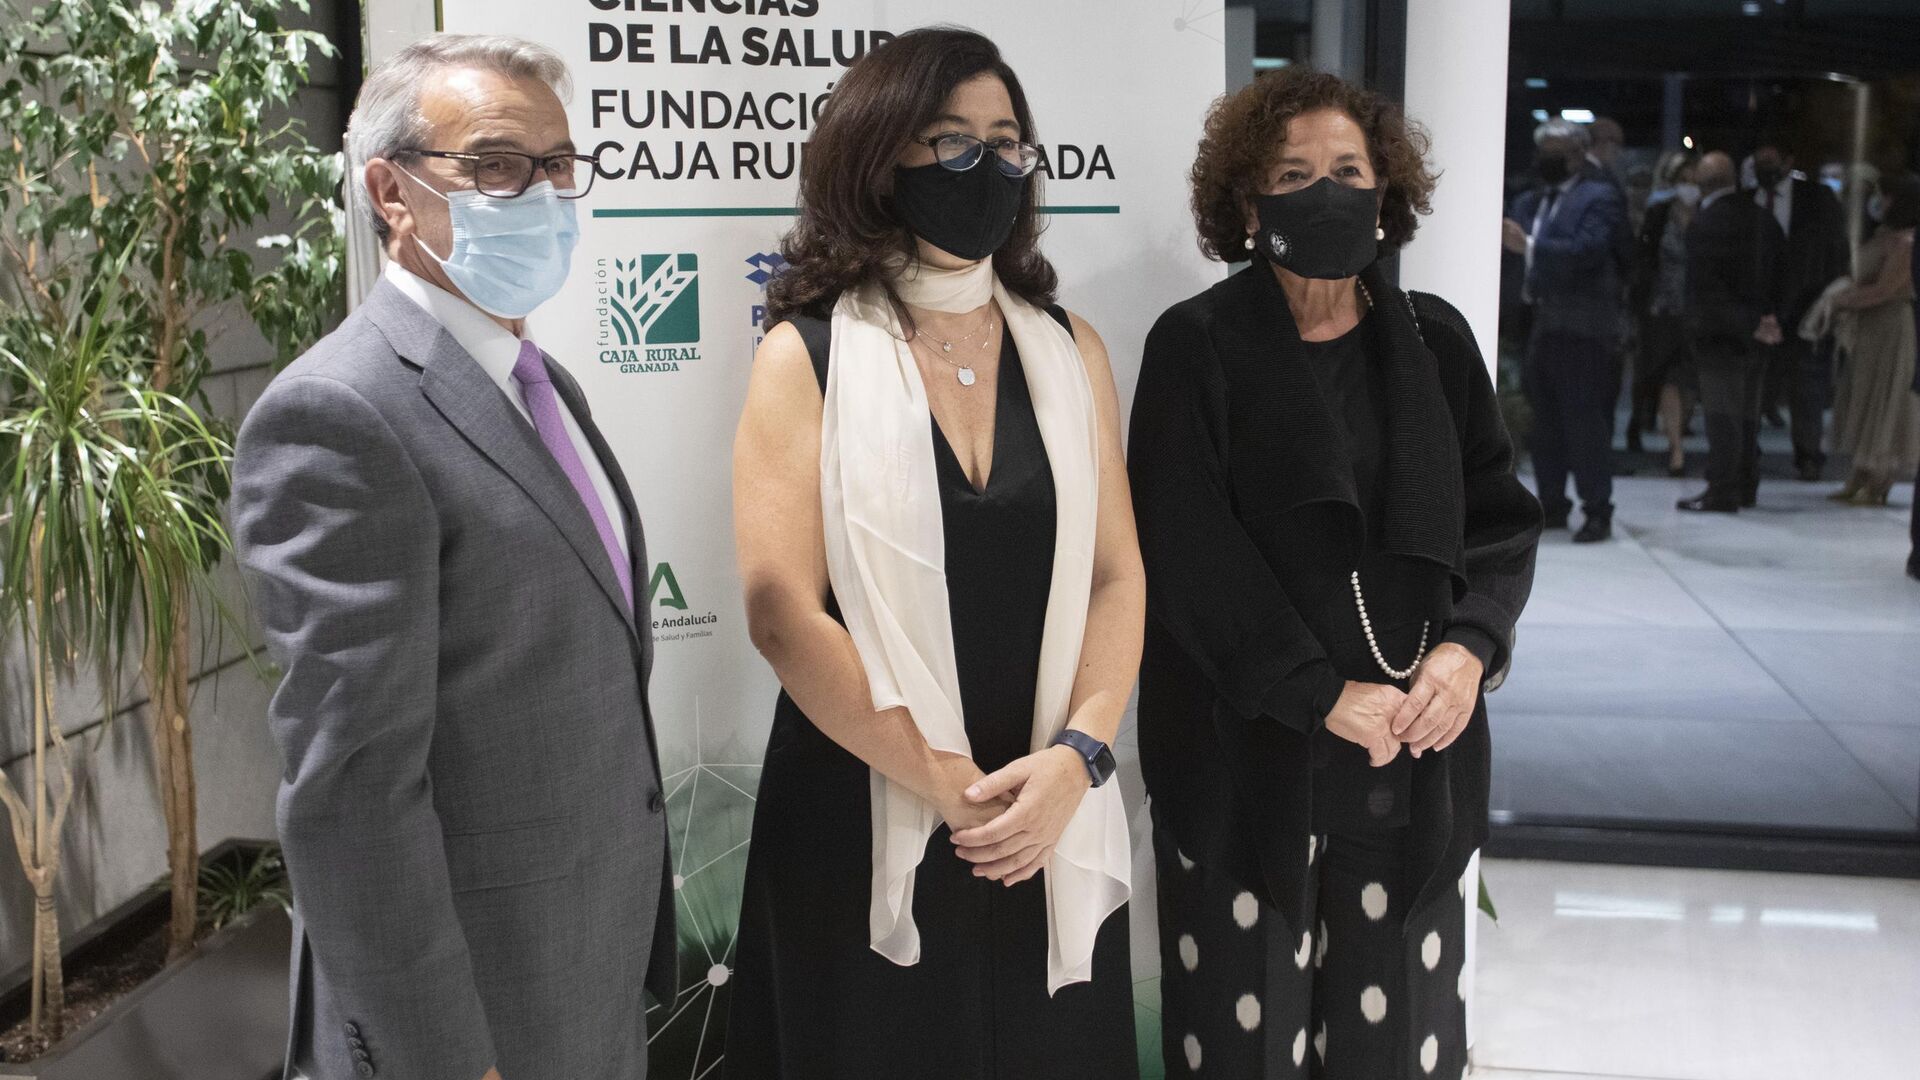 Fotos del Premio Ciencias de la Salud-Fundaci&oacute;n Caja Rural Granada de 2021